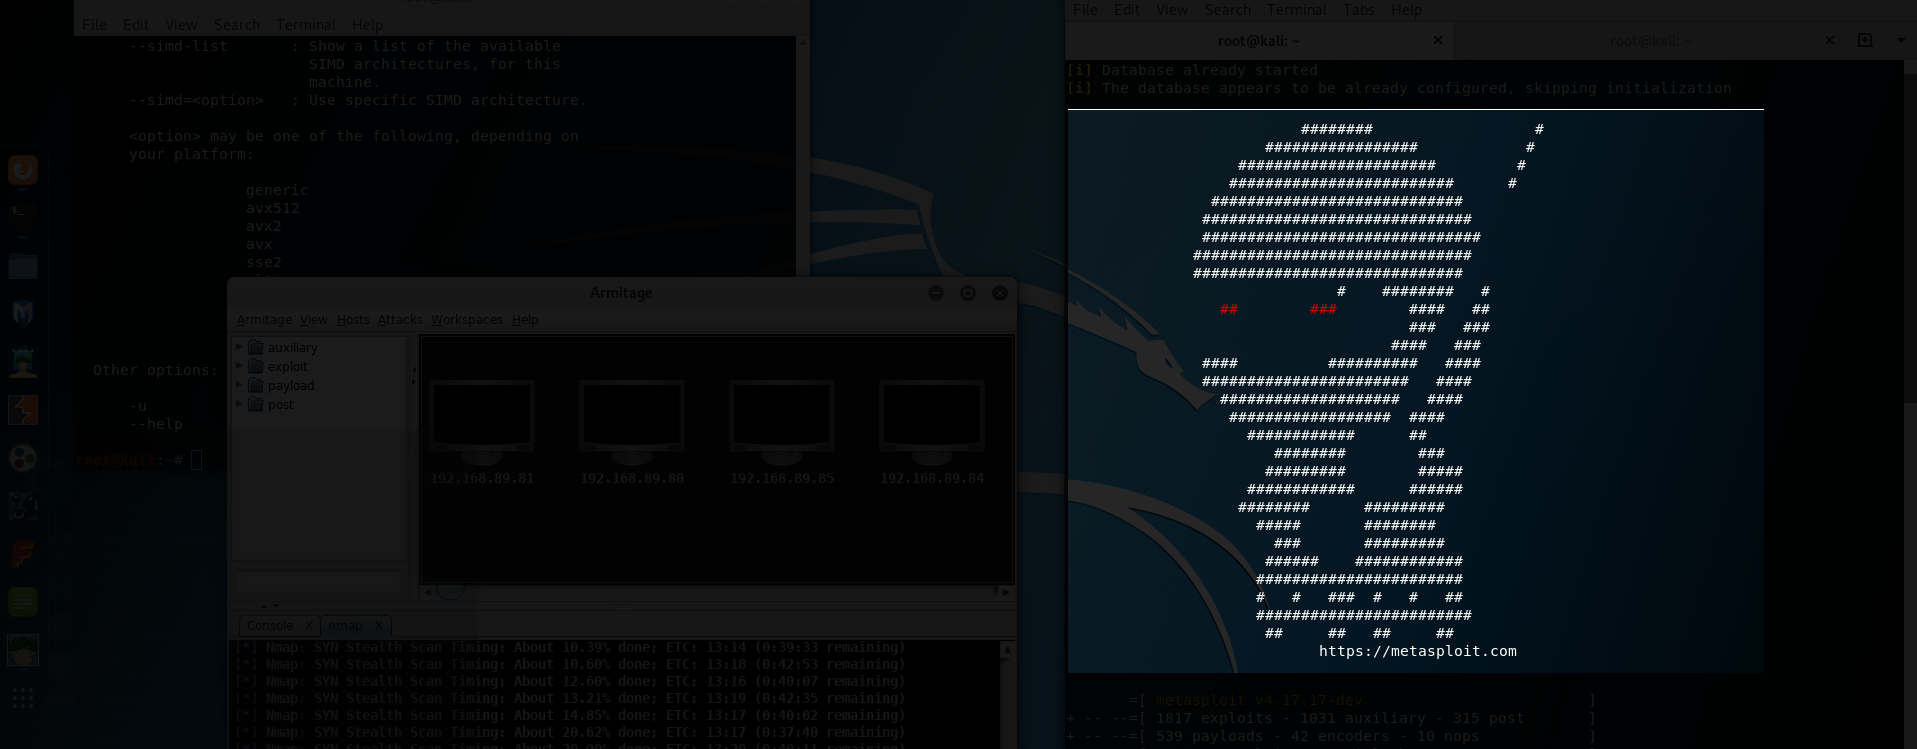 Linux: Screen sezení